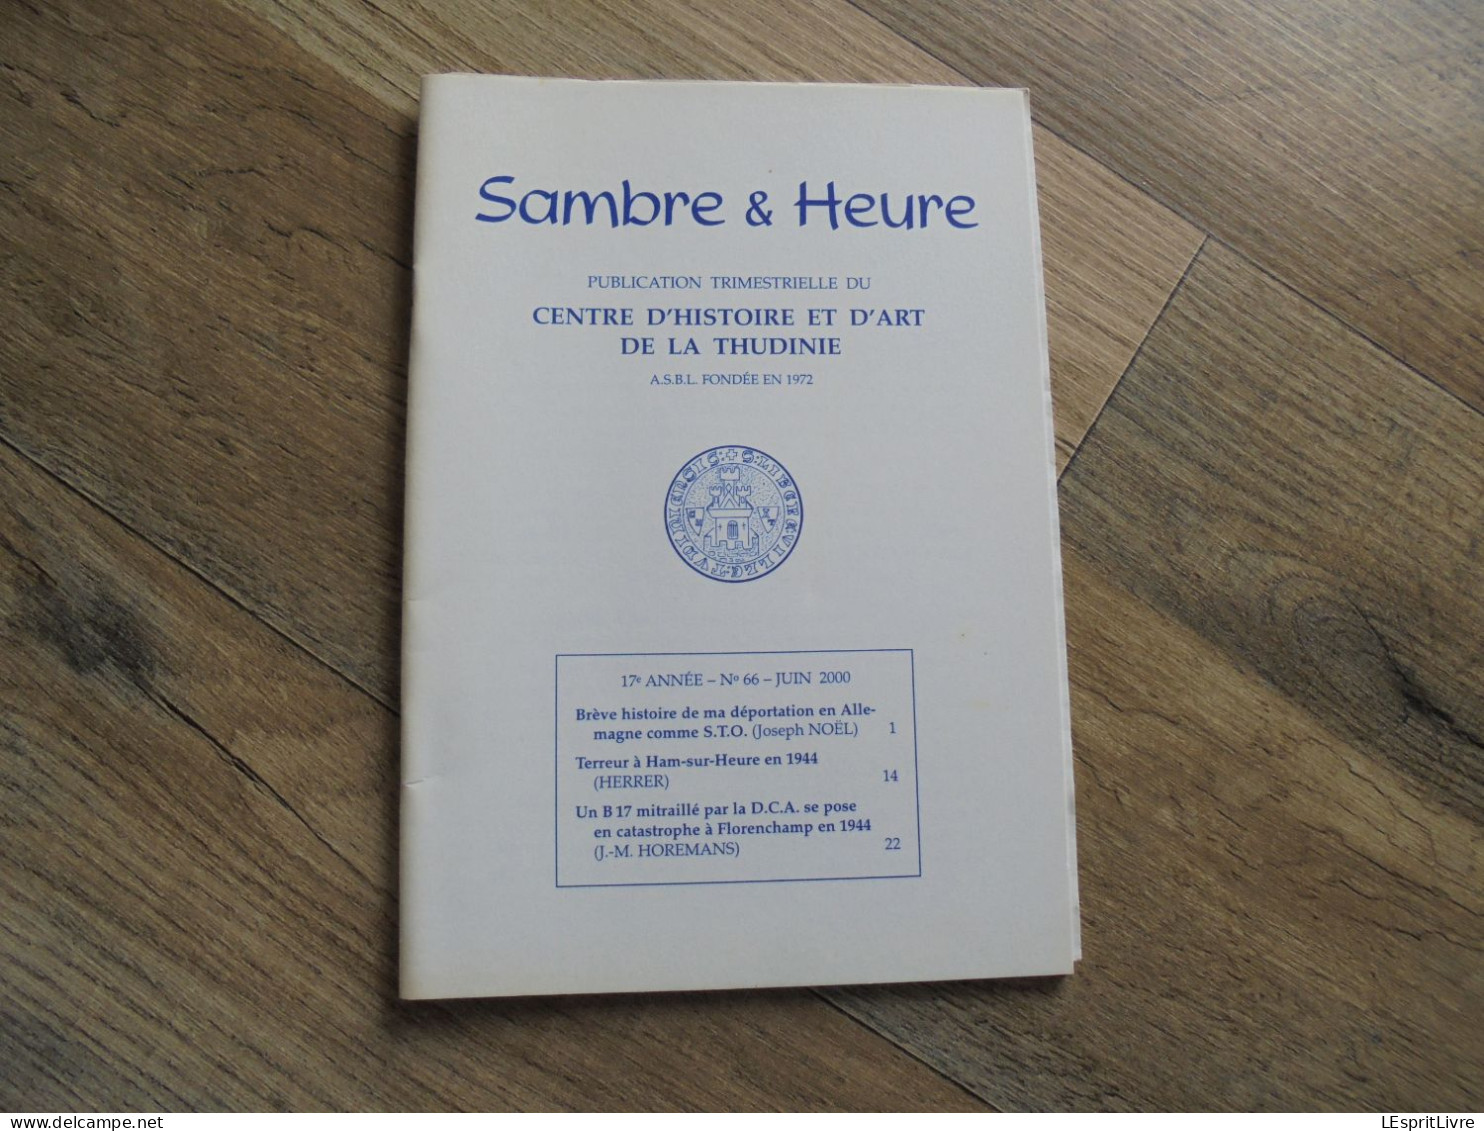 SAMBRE & HEURE N° 66 Régionalisme Thudinie Thuin Guerre 40 45 Déportation STO Ham Sur Heure Crash B17 Florenchamp DCA - België